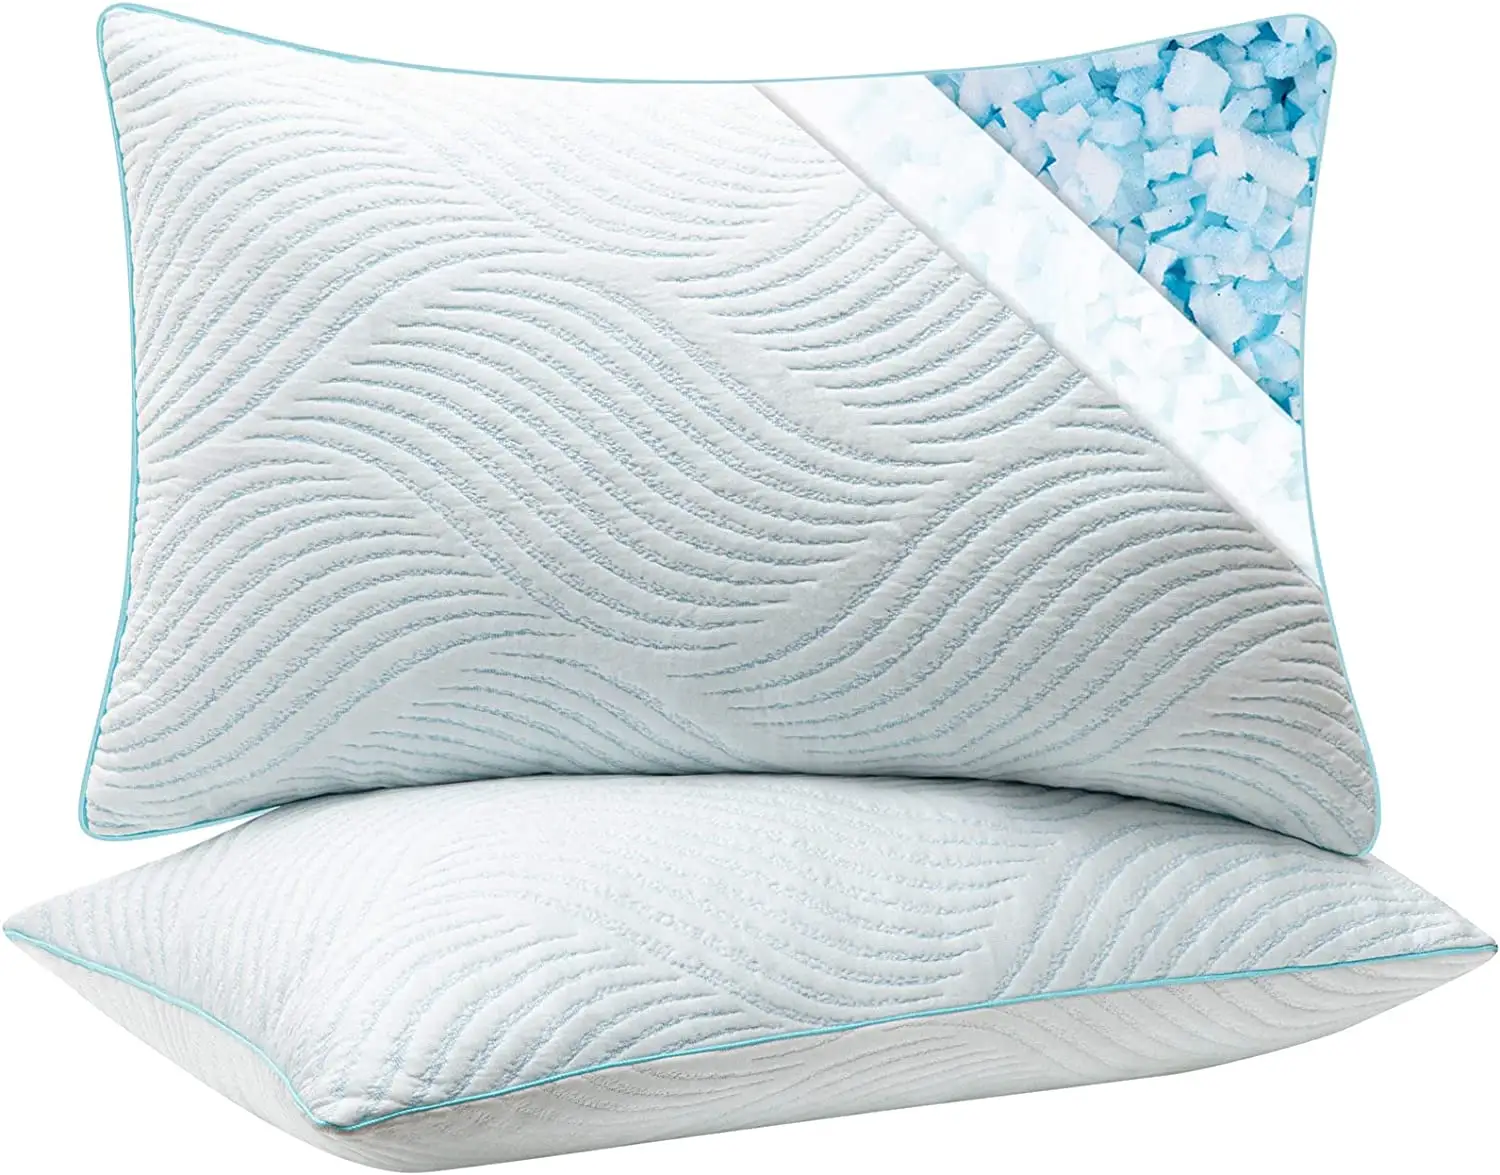 Arka ve yan uyuyan için ayarlanabilir firma yastık uyku için rendelenmiş bellek köpük yastıklar soğutma